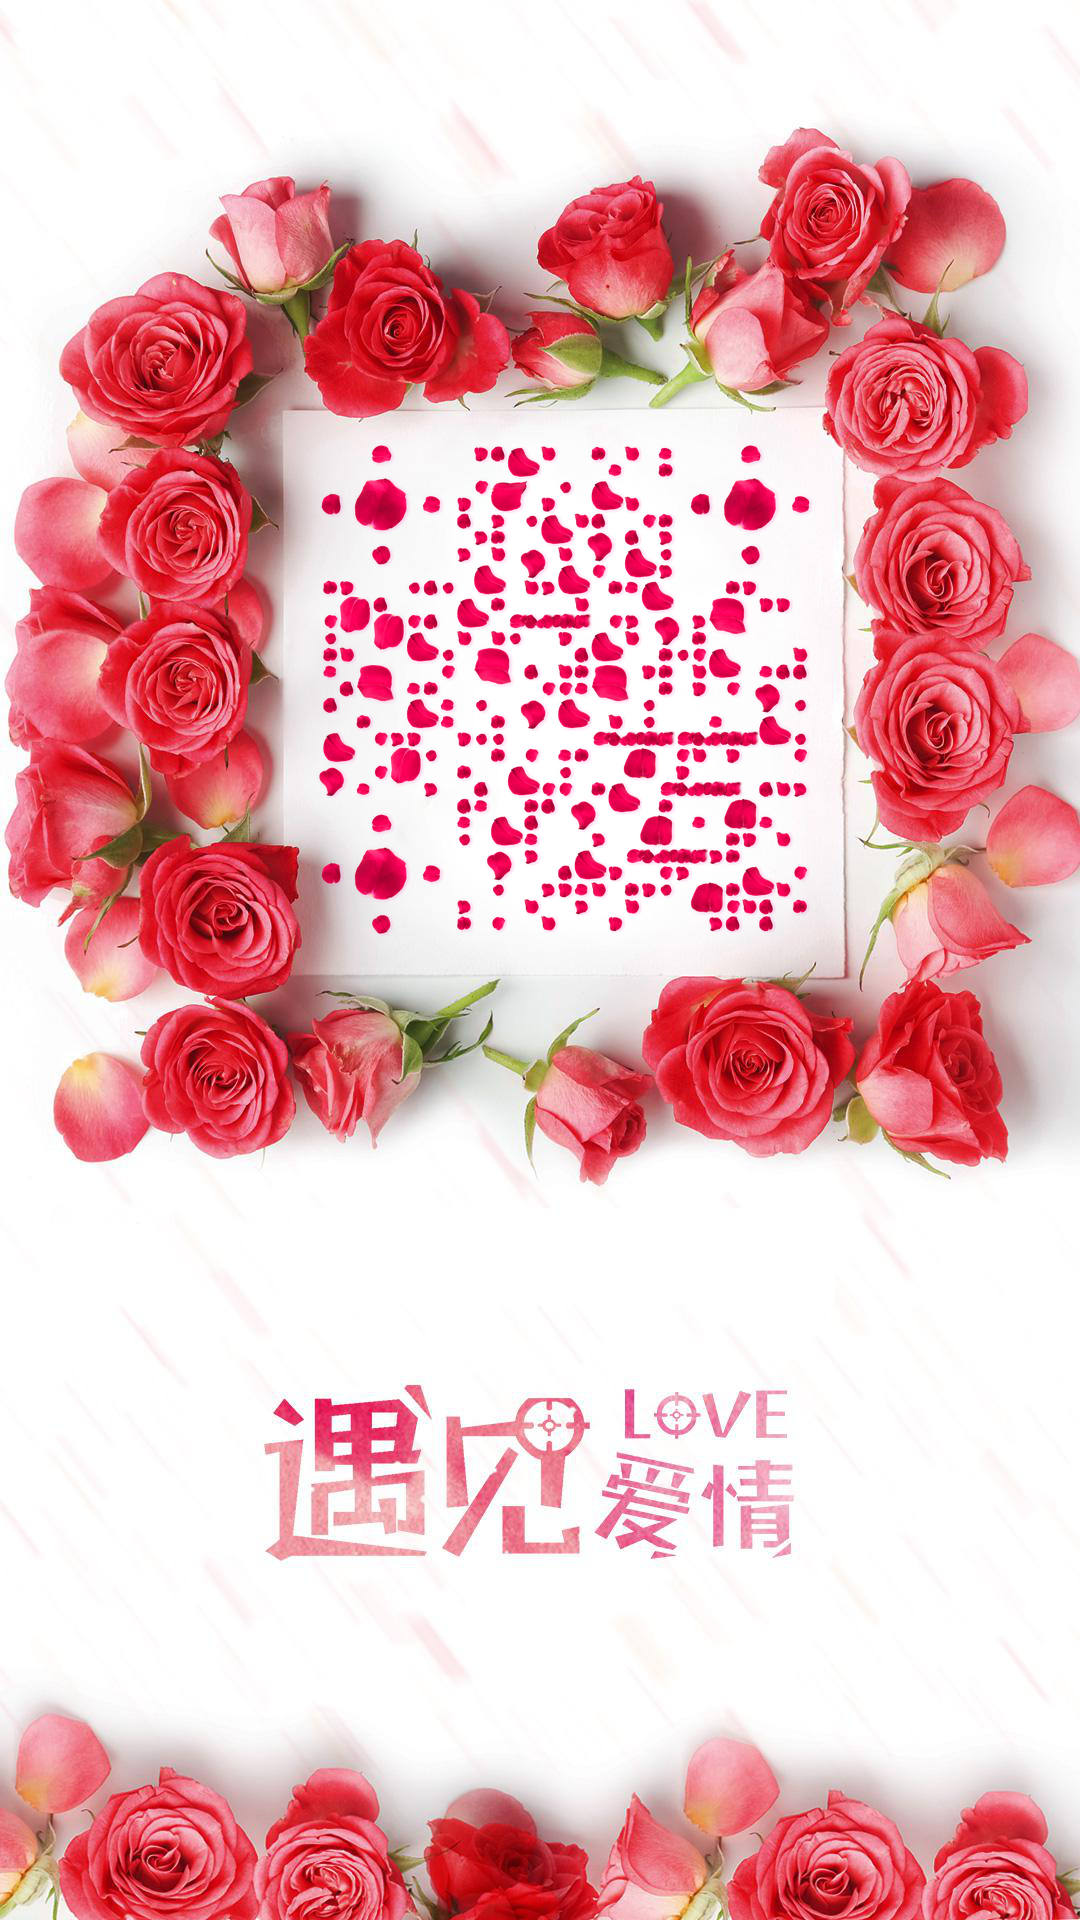 遇见爱情情人节平铺粉色玫瑰花瓣二维码生成器-平面静态-手机壁纸